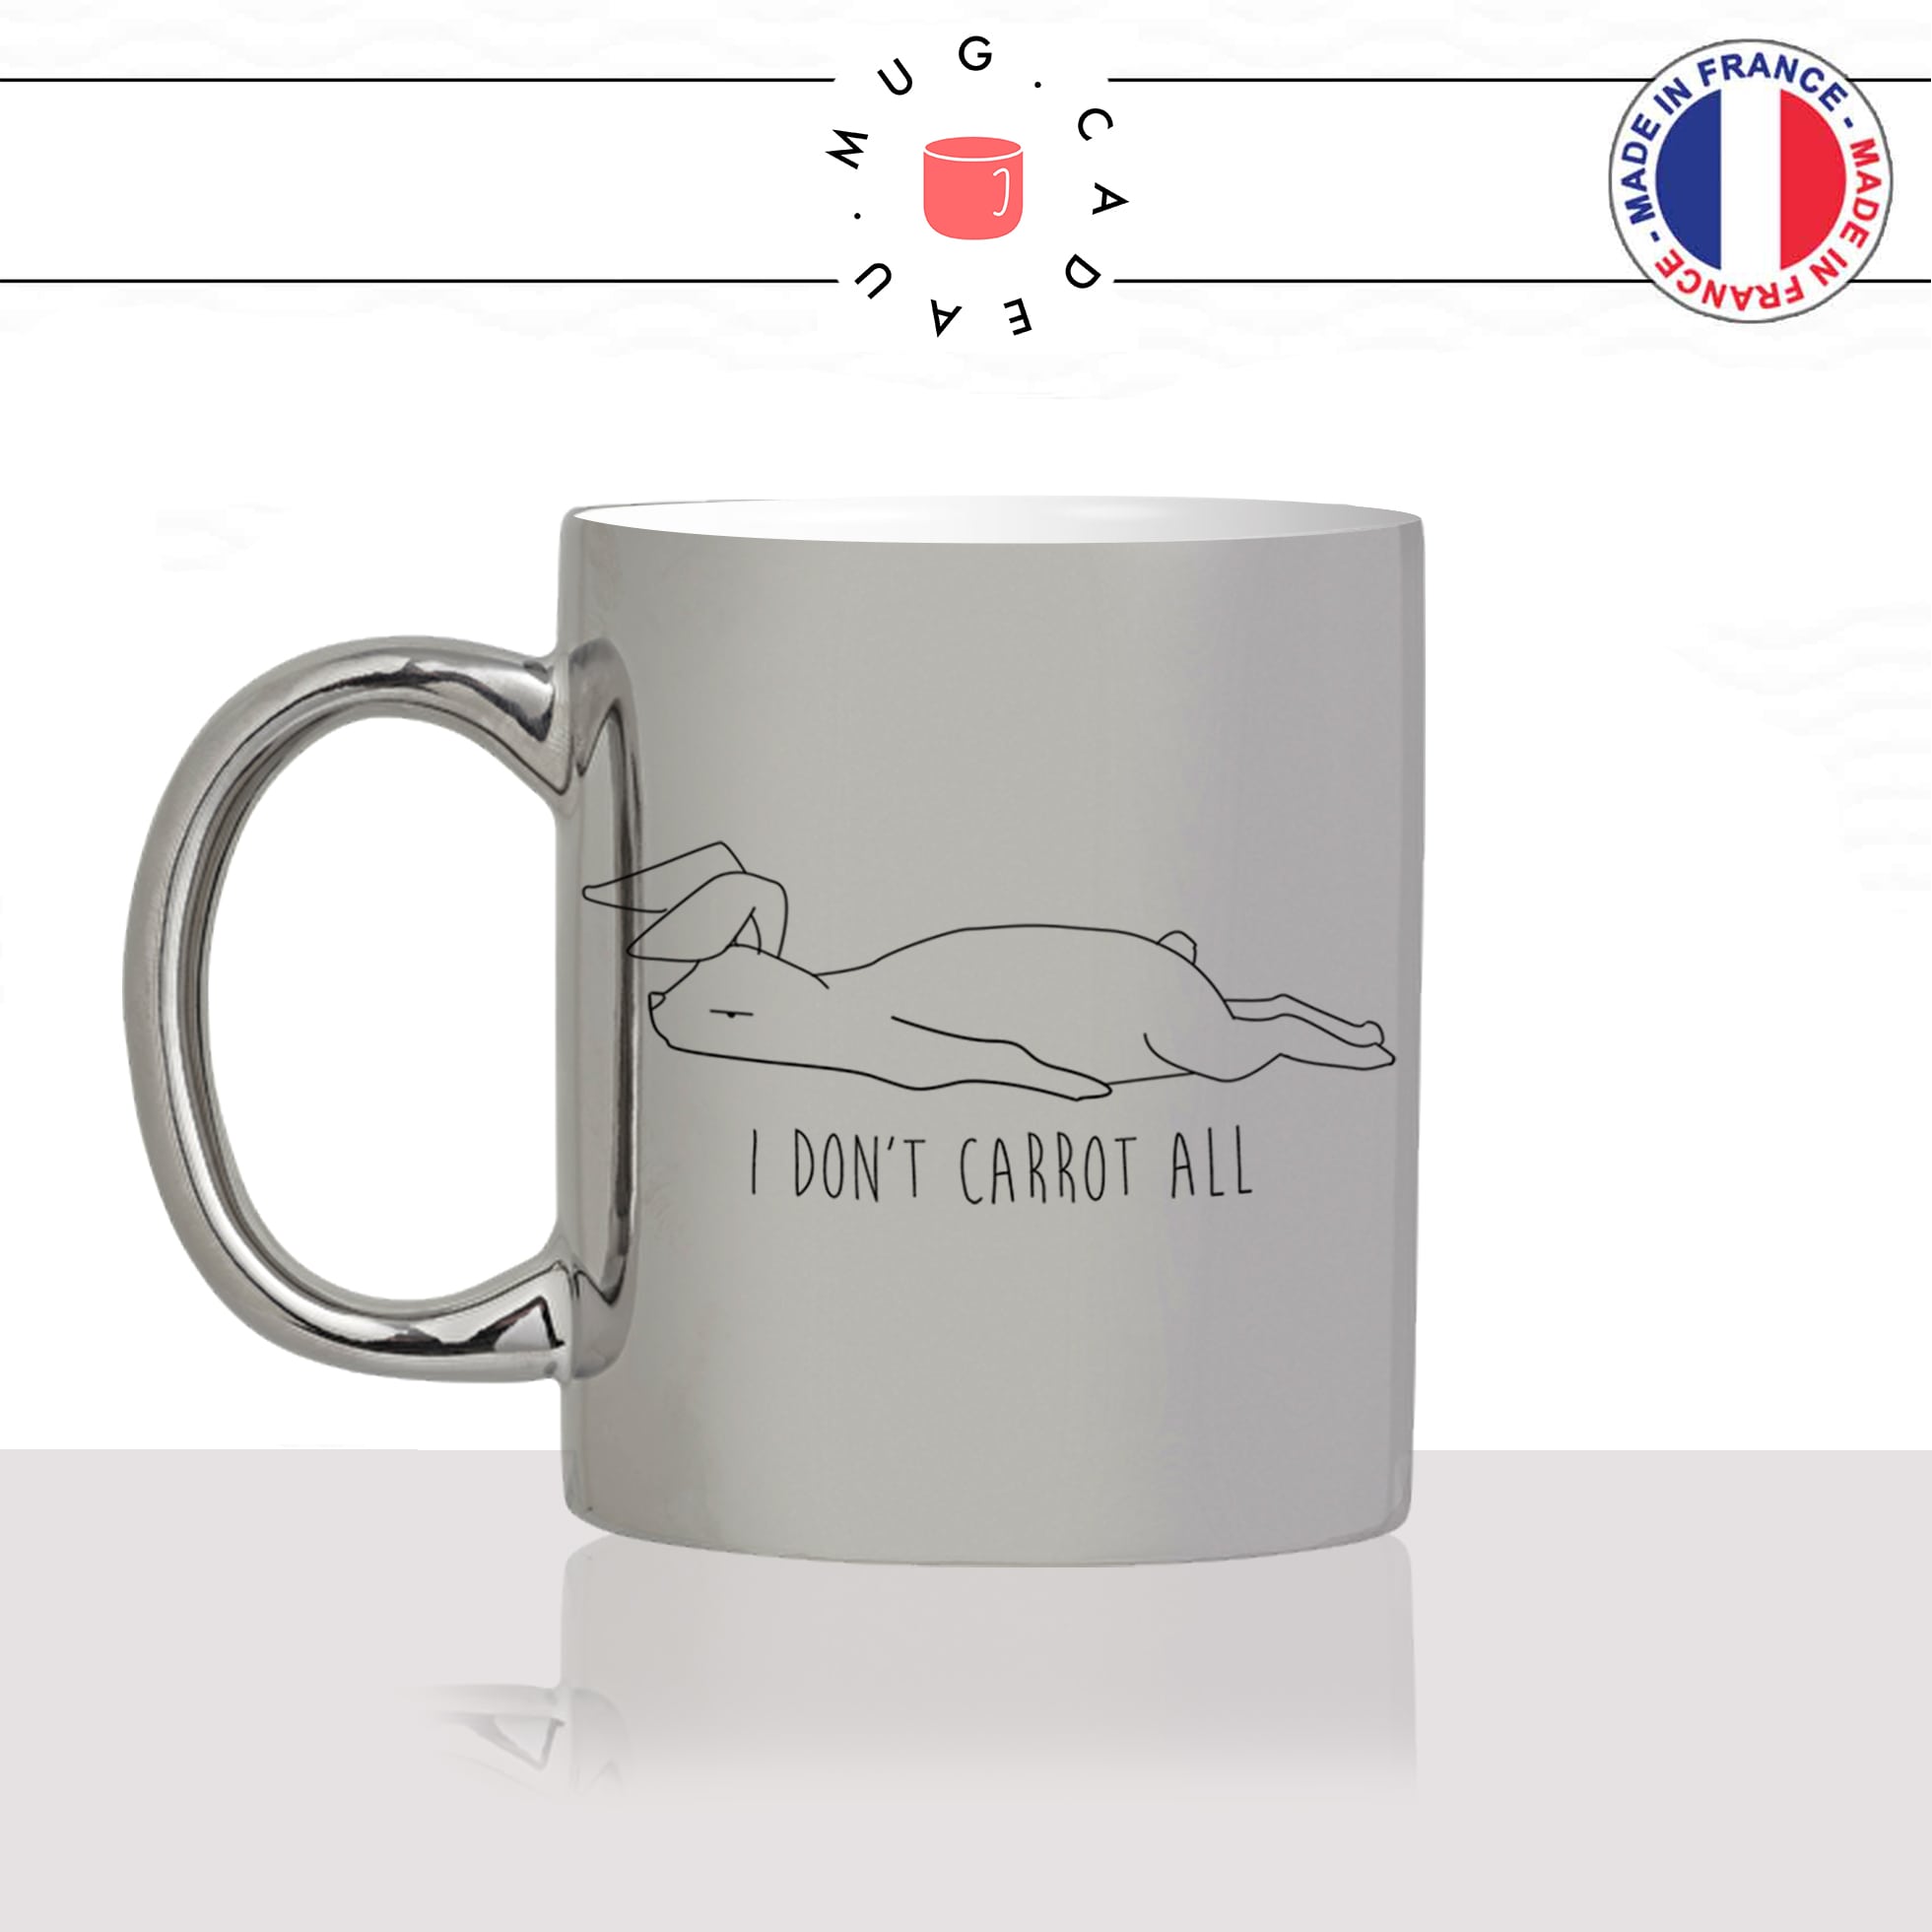 mug-tasse-silver-argenté-argent-lapin-carrotte-humour-dessin-drole-mignon-animal-noir-fun-café-thé-idée-cadeau-original-personnalisé-min